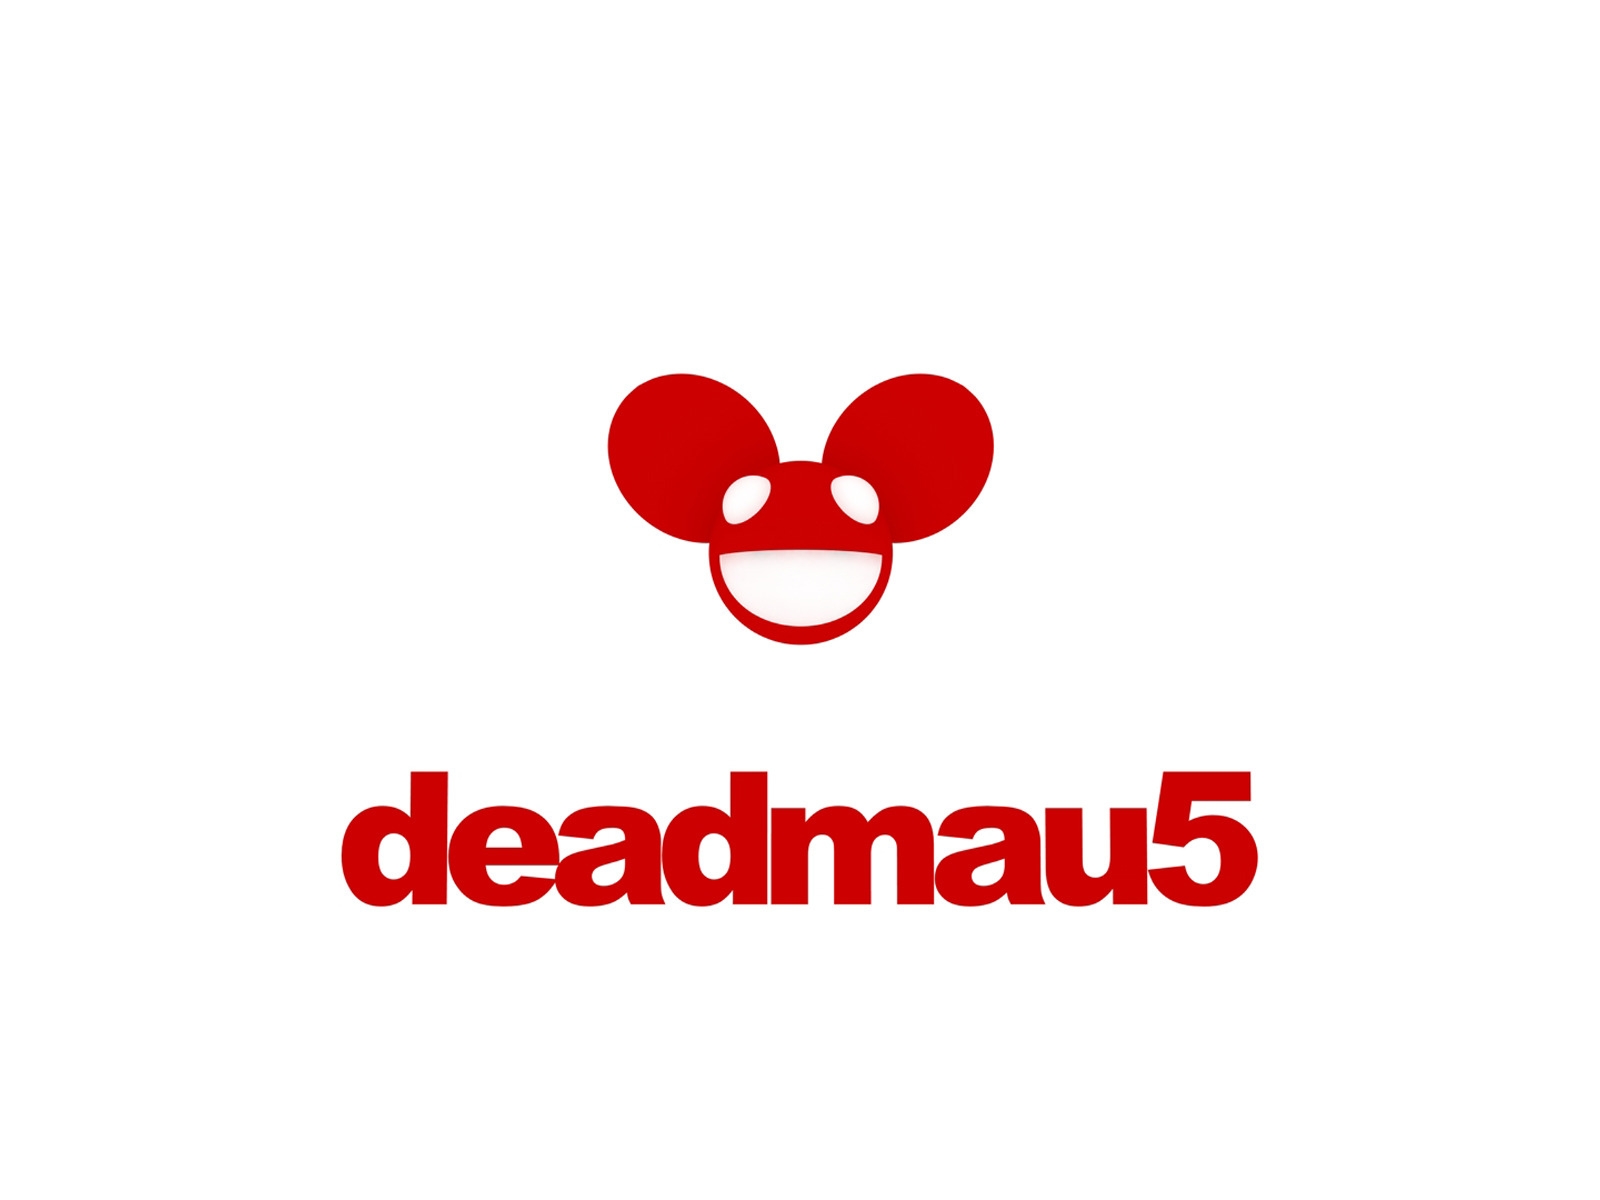 Deadmau5 Logo for 1600 x 1200 resolution